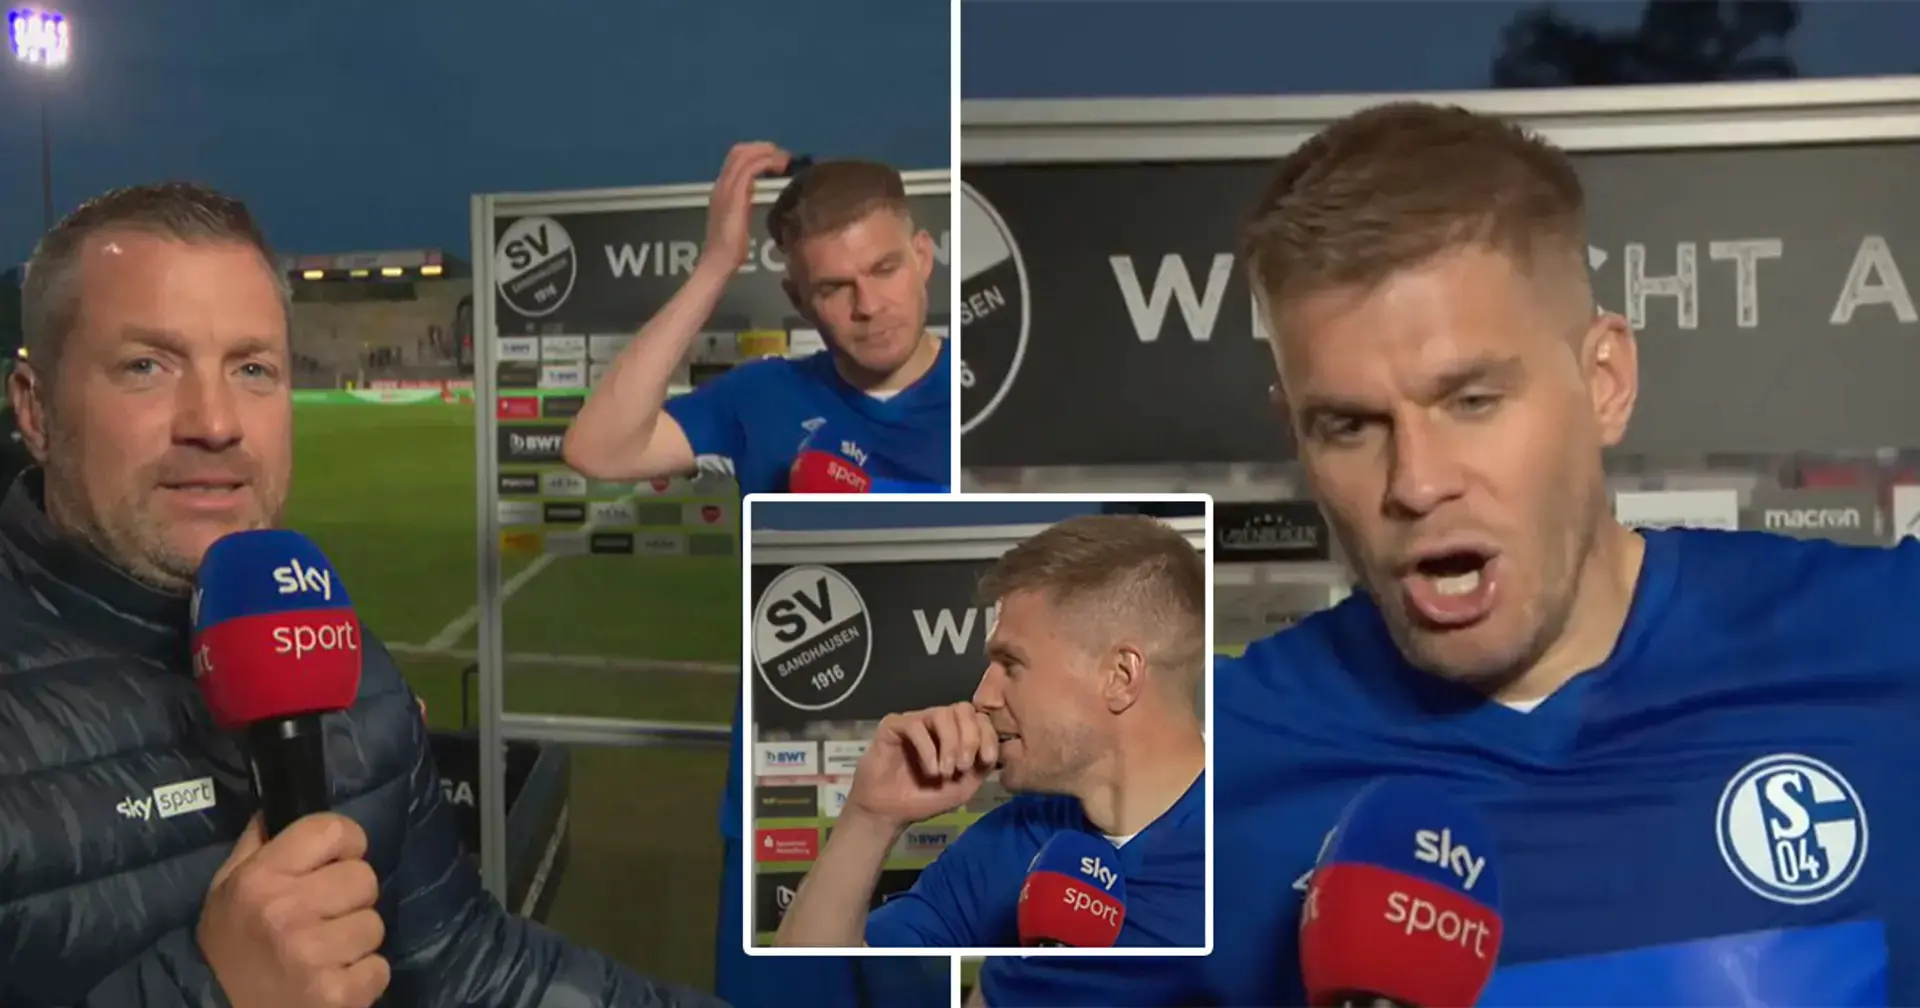 'No podía ni hablar': el jugador del Schalke da una entrevista después del partido totalmente afónico